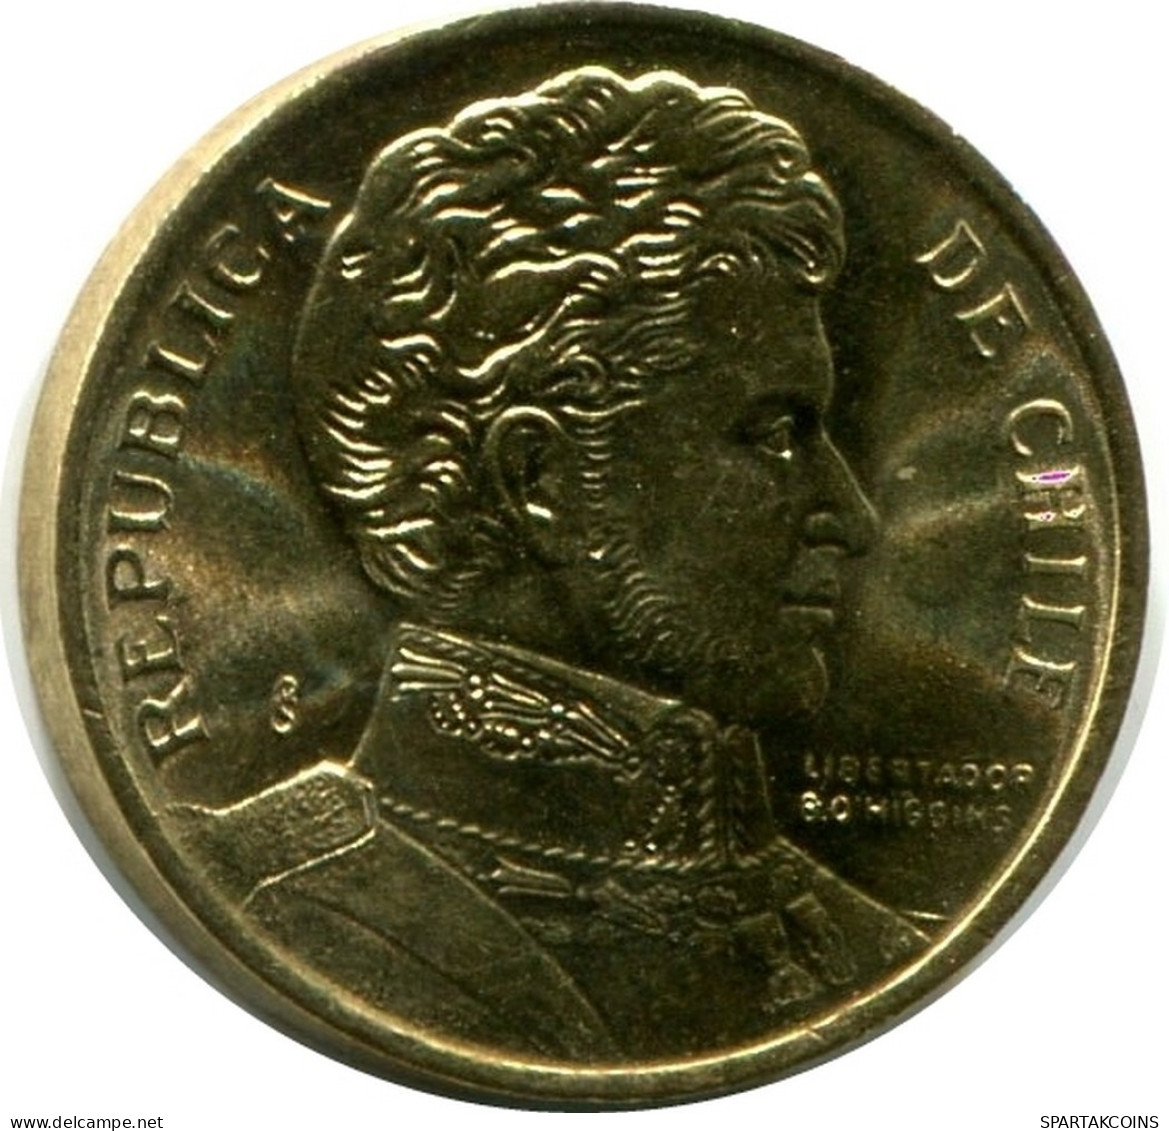 1 PESO 1990 CHILE UNC Coin #M10143.U.A - Cile